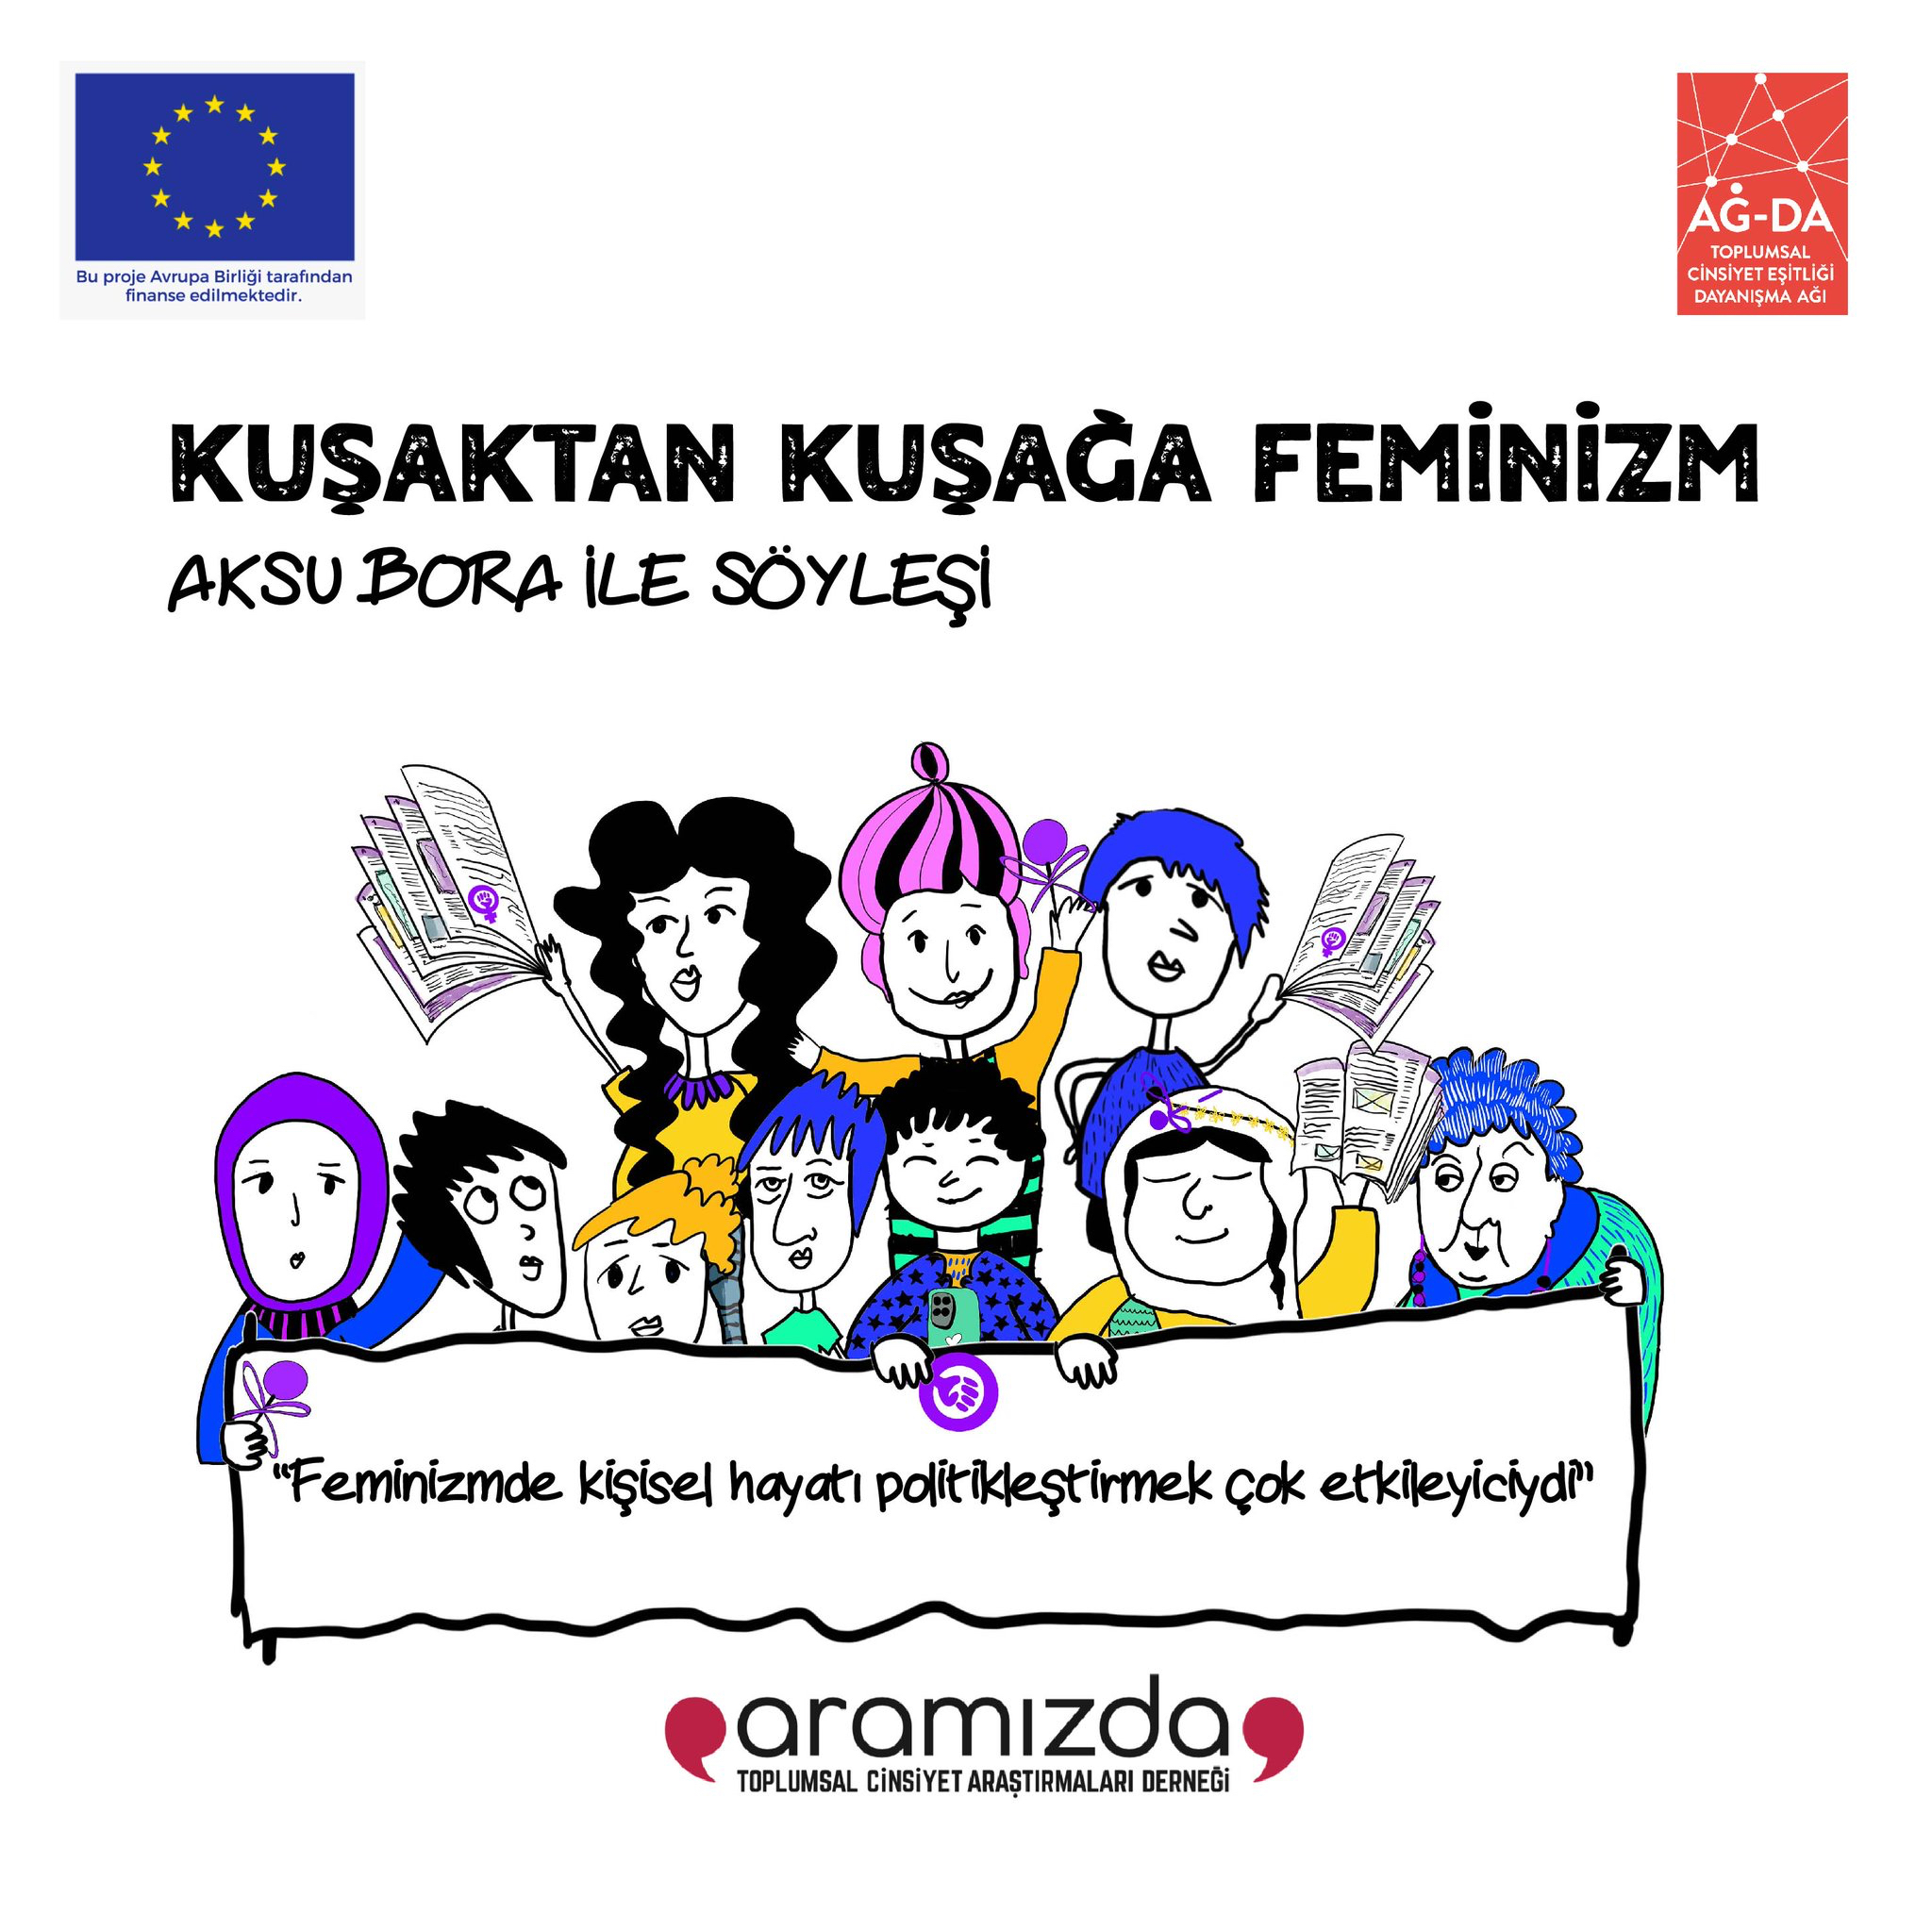 Kuşaktan Kuşağa Feminizm- Aksu Bora ile Söyleşi yayında!